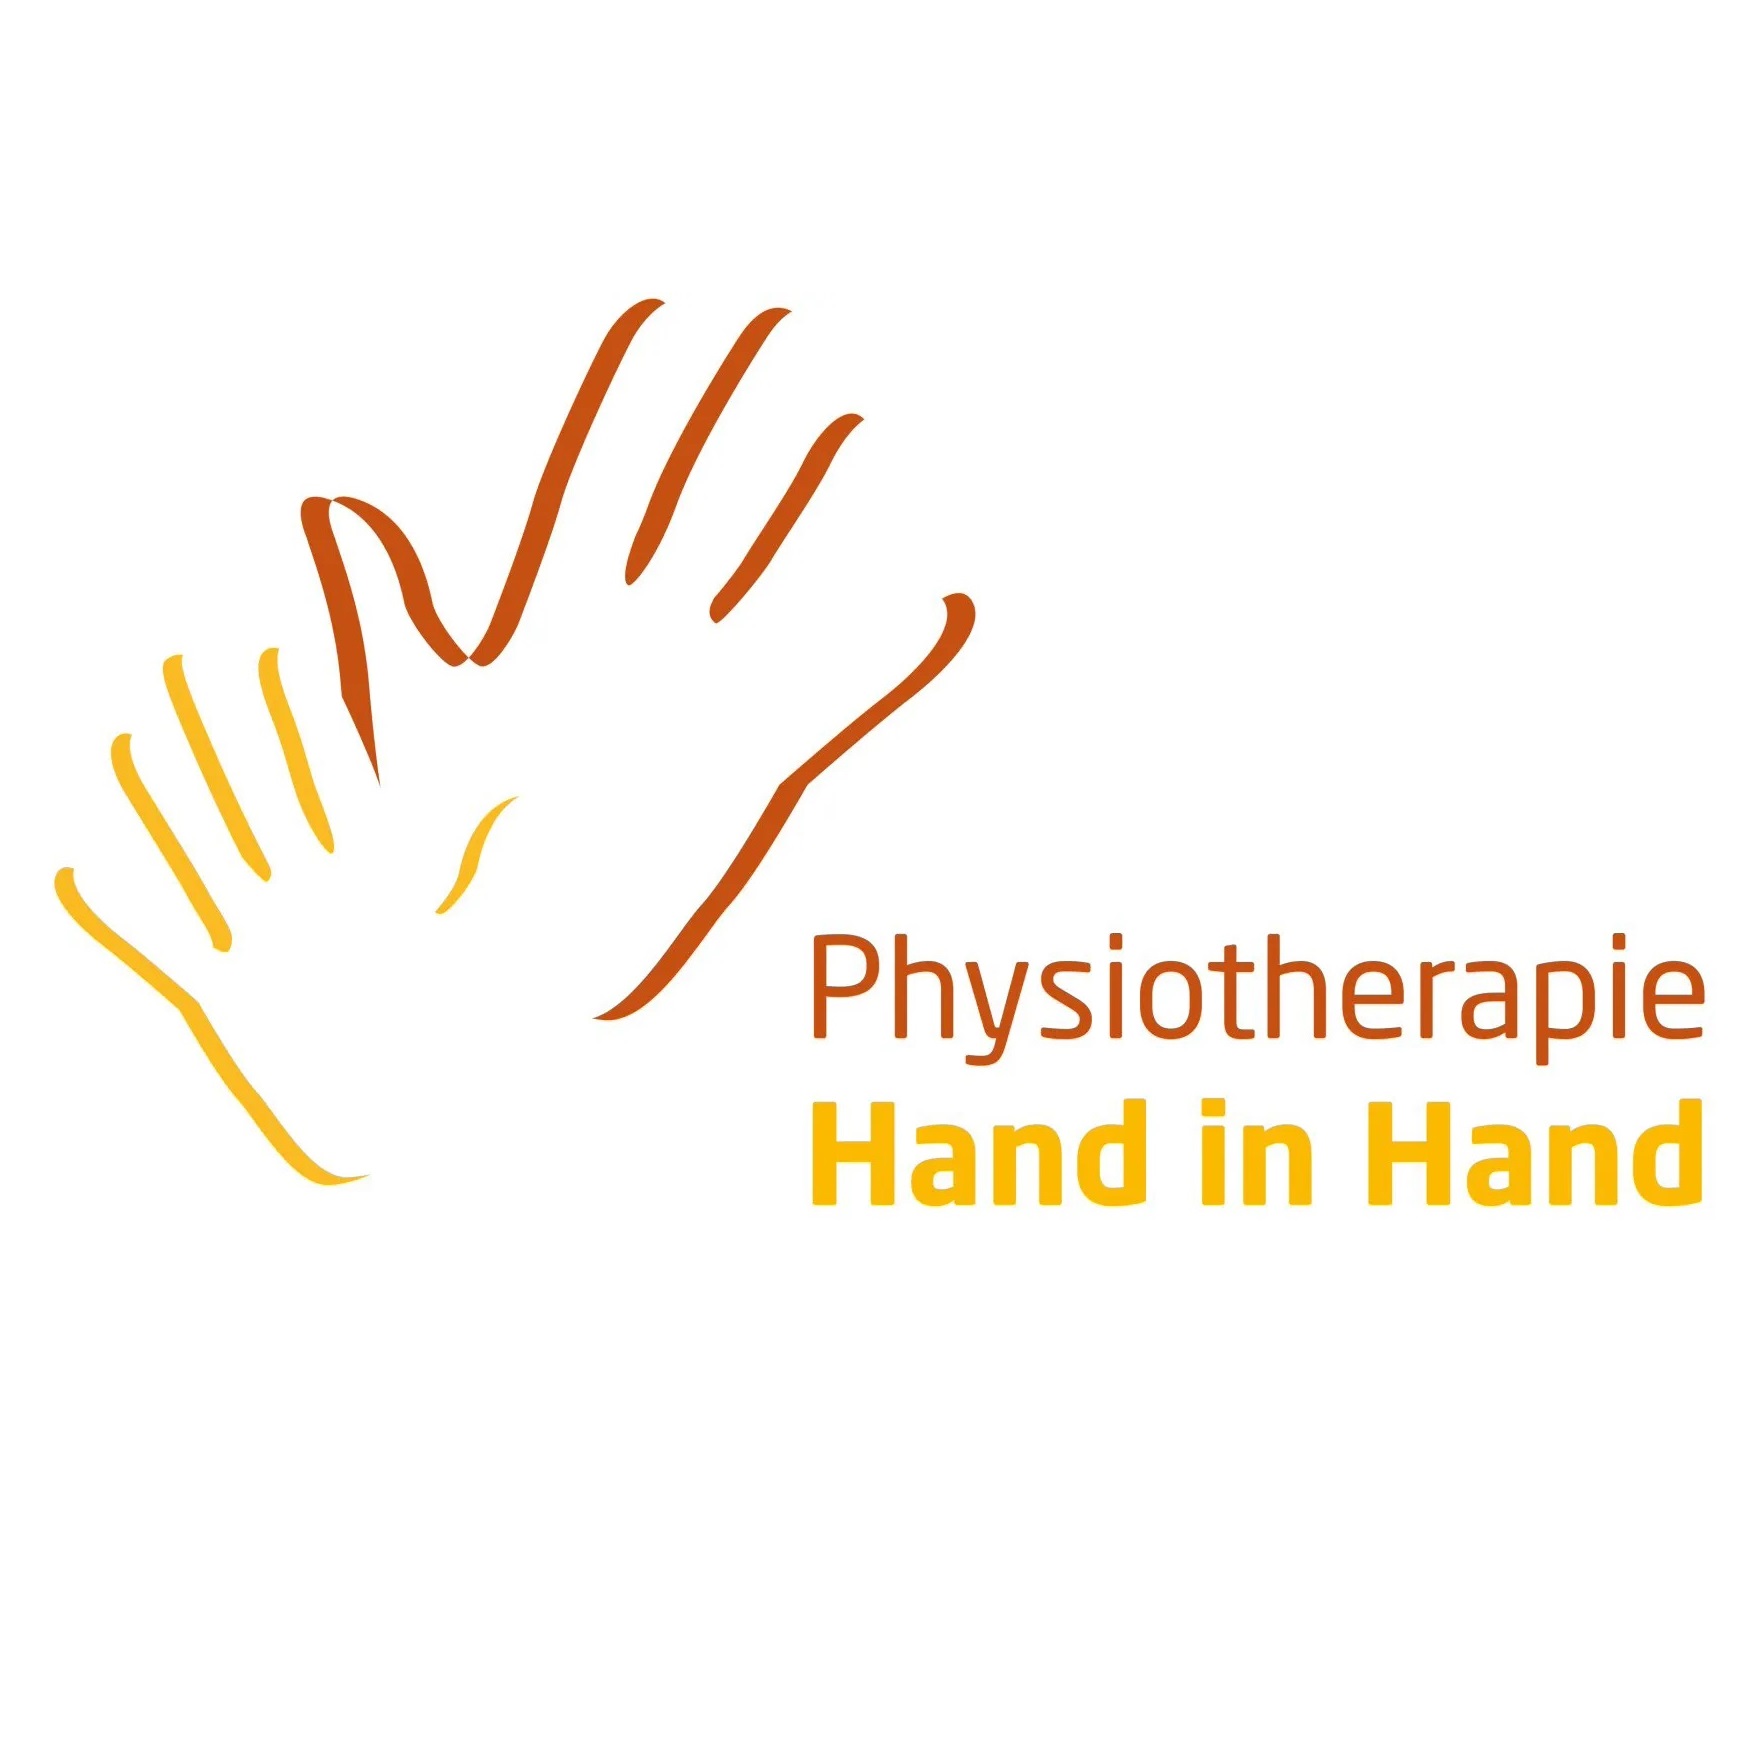 Physiotherapie Hand in Hand – Vandenbergen und Polman